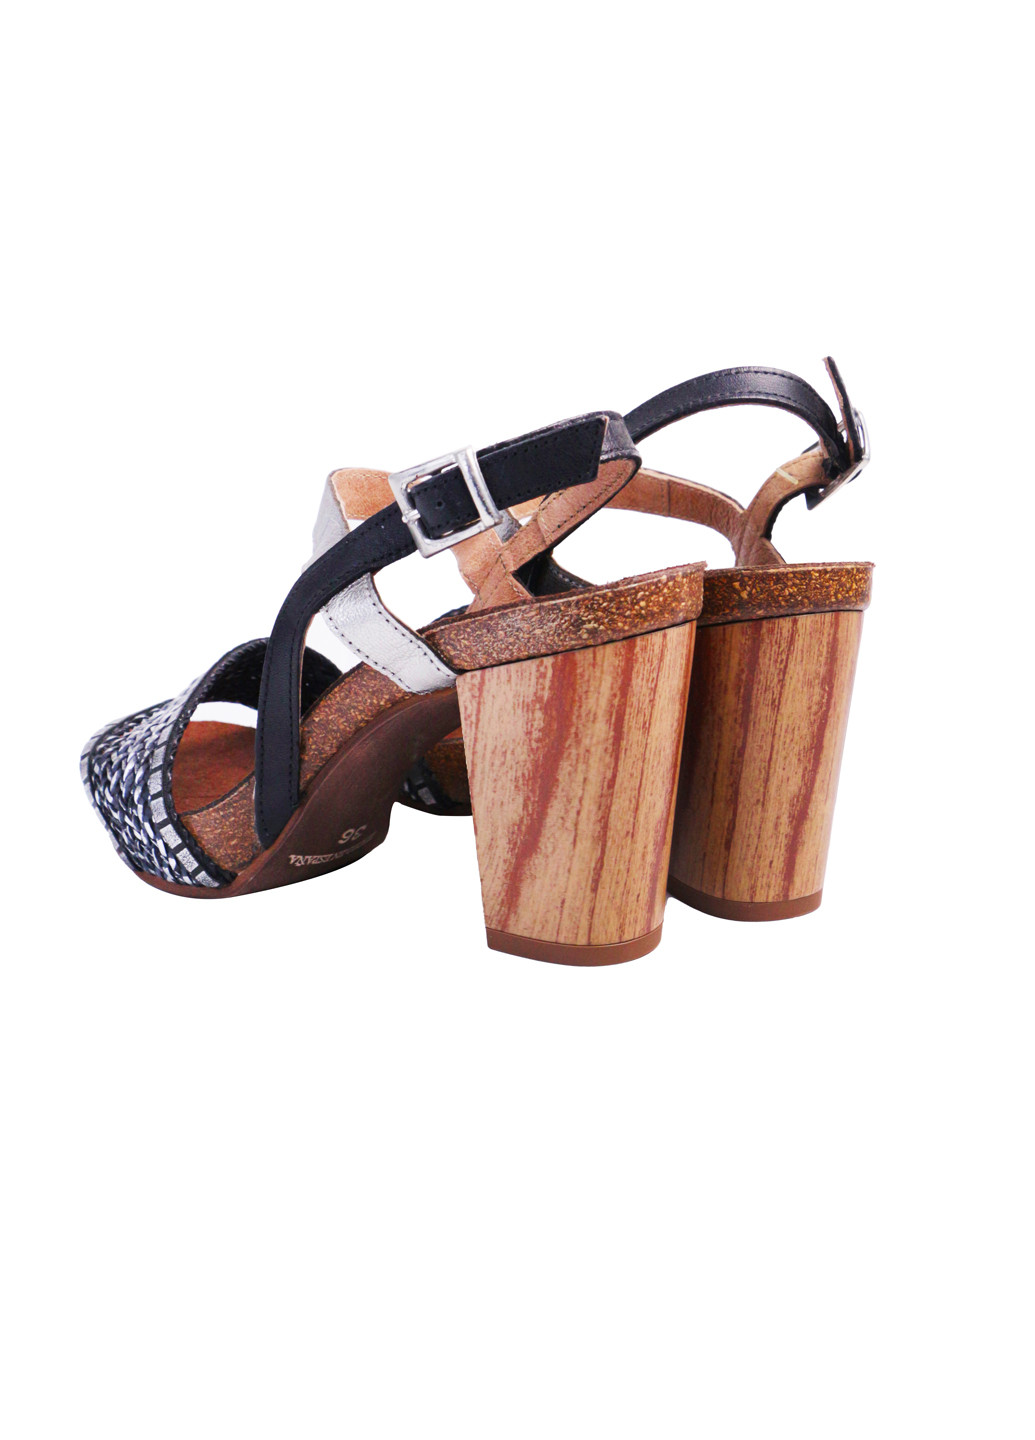 Комбинированные босоножки женские натуральная кожа на широком каблуке 40 черно-серебристые a&d Lidl